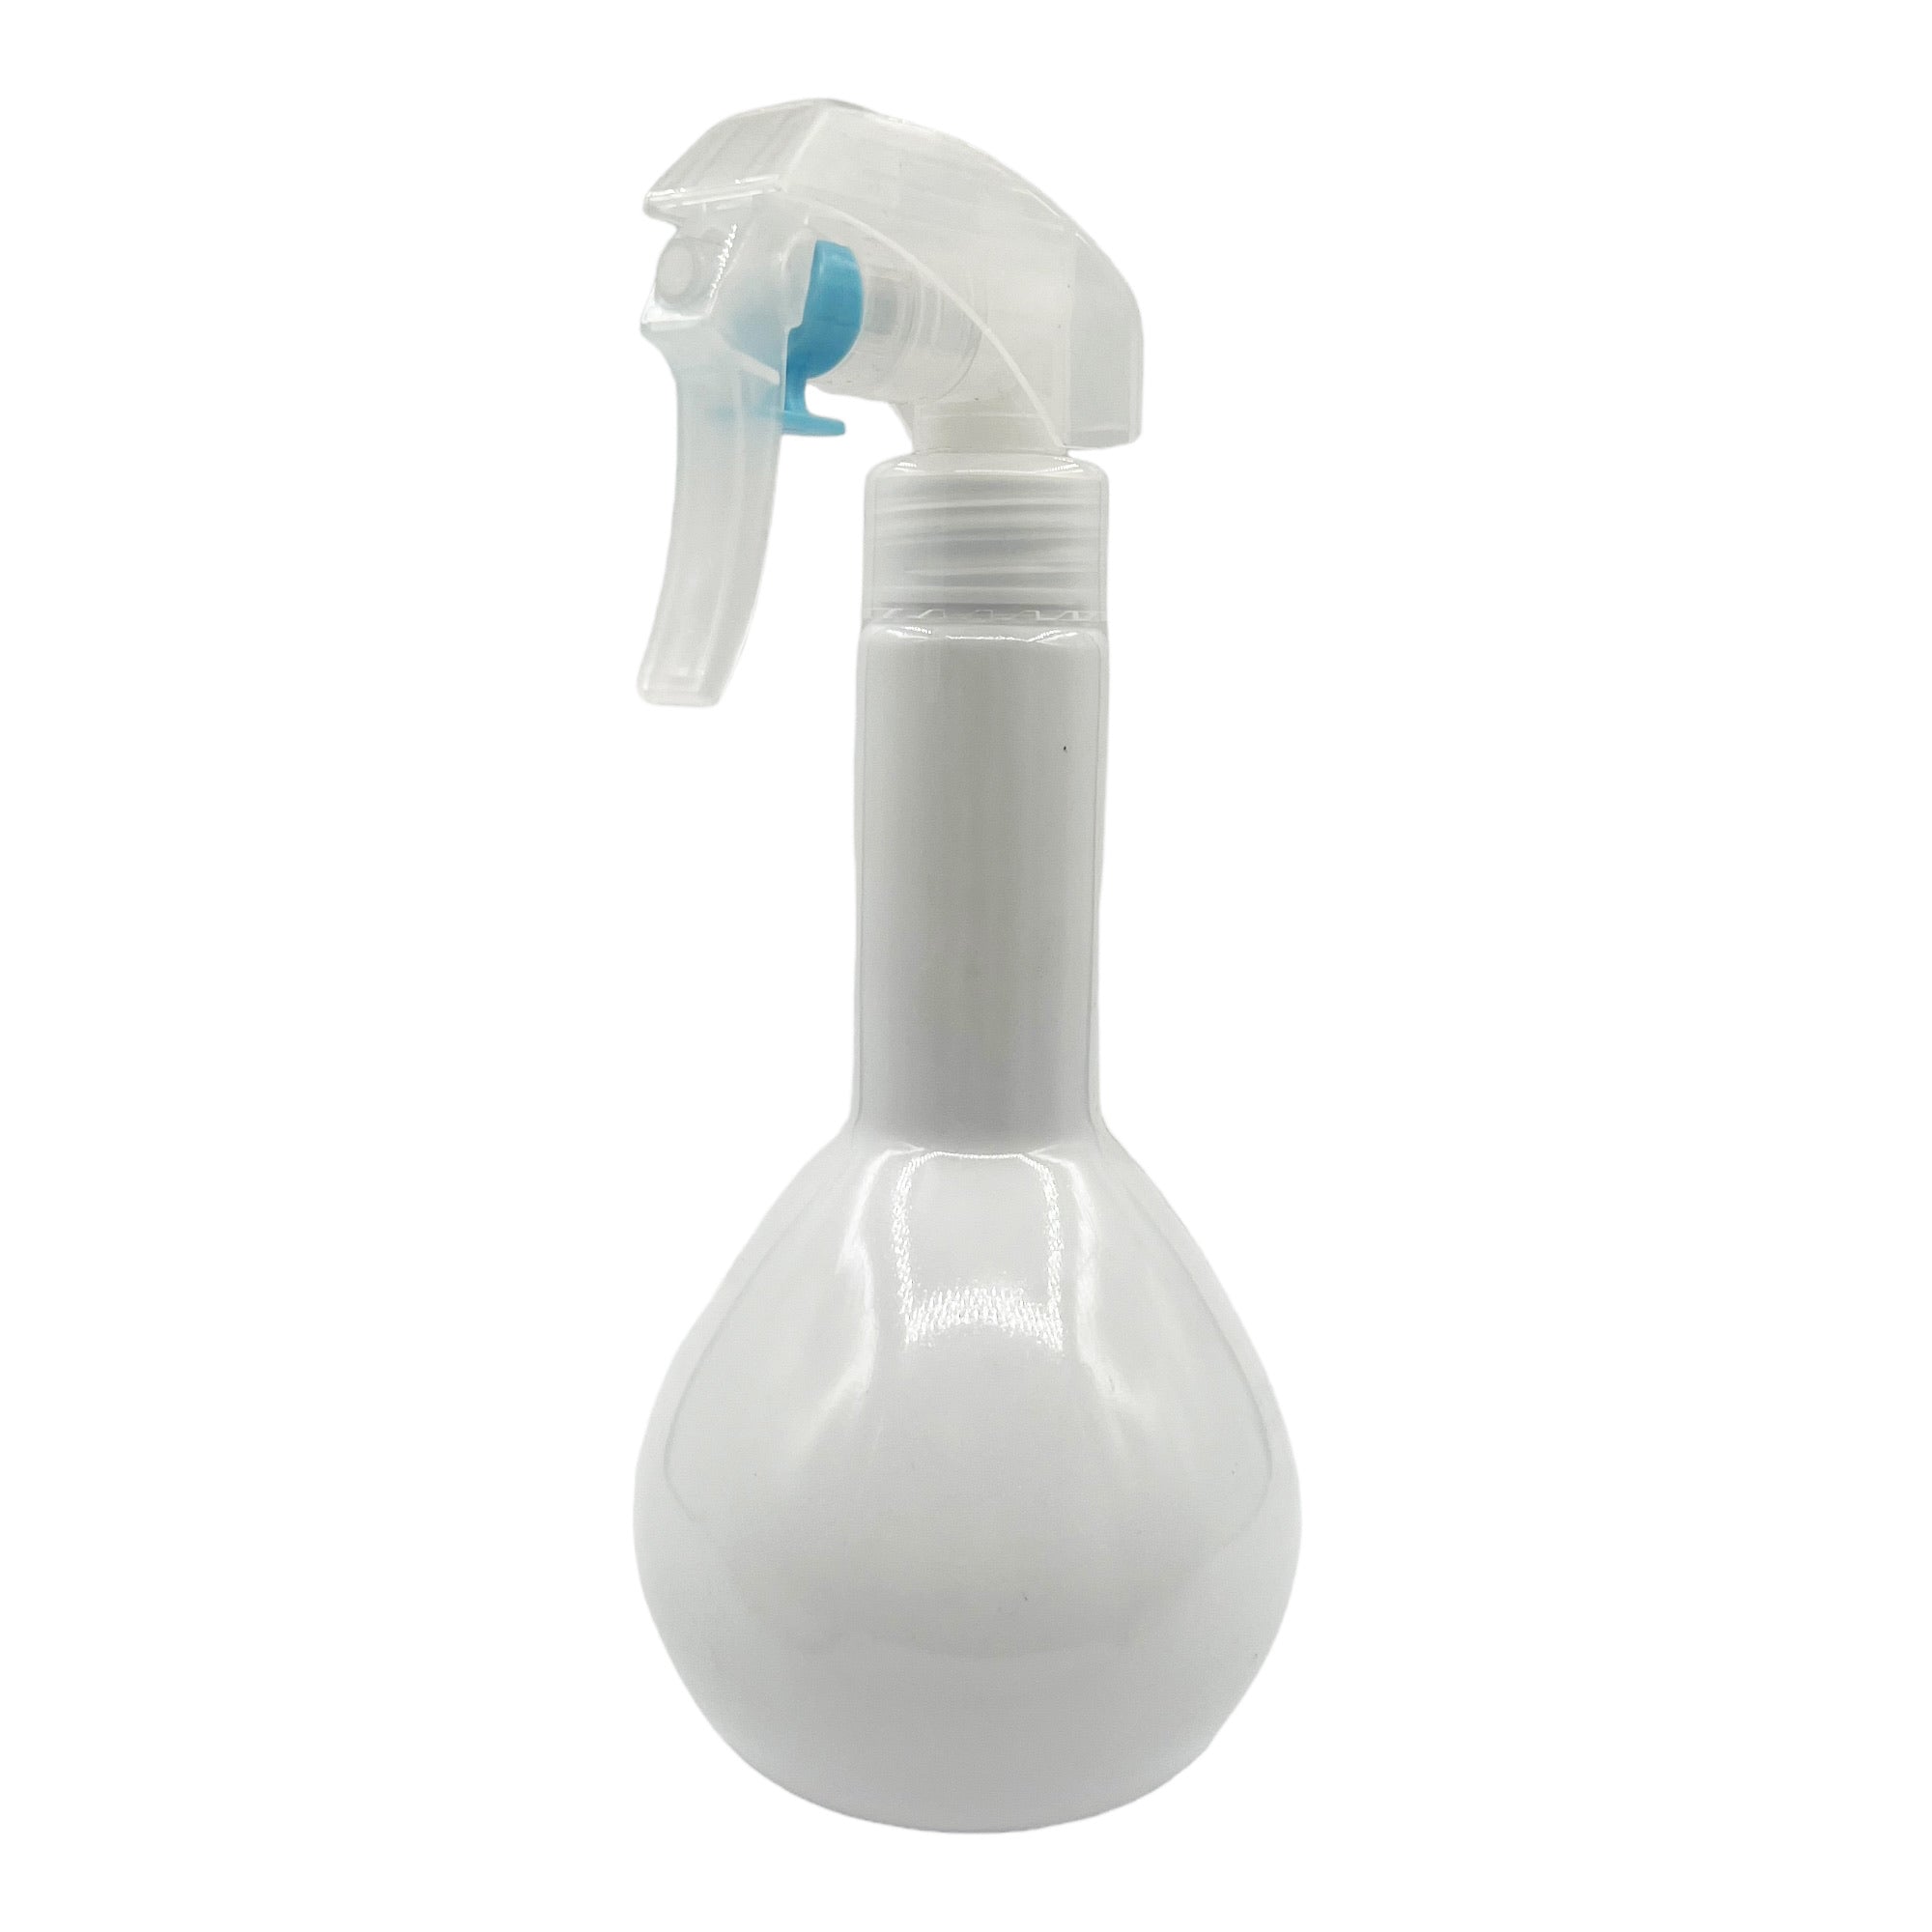 Eson - Water Spray Bottle 300ml Round Empty Refillable Ultra Fine Mist Sprayer (White) - Eson Direct